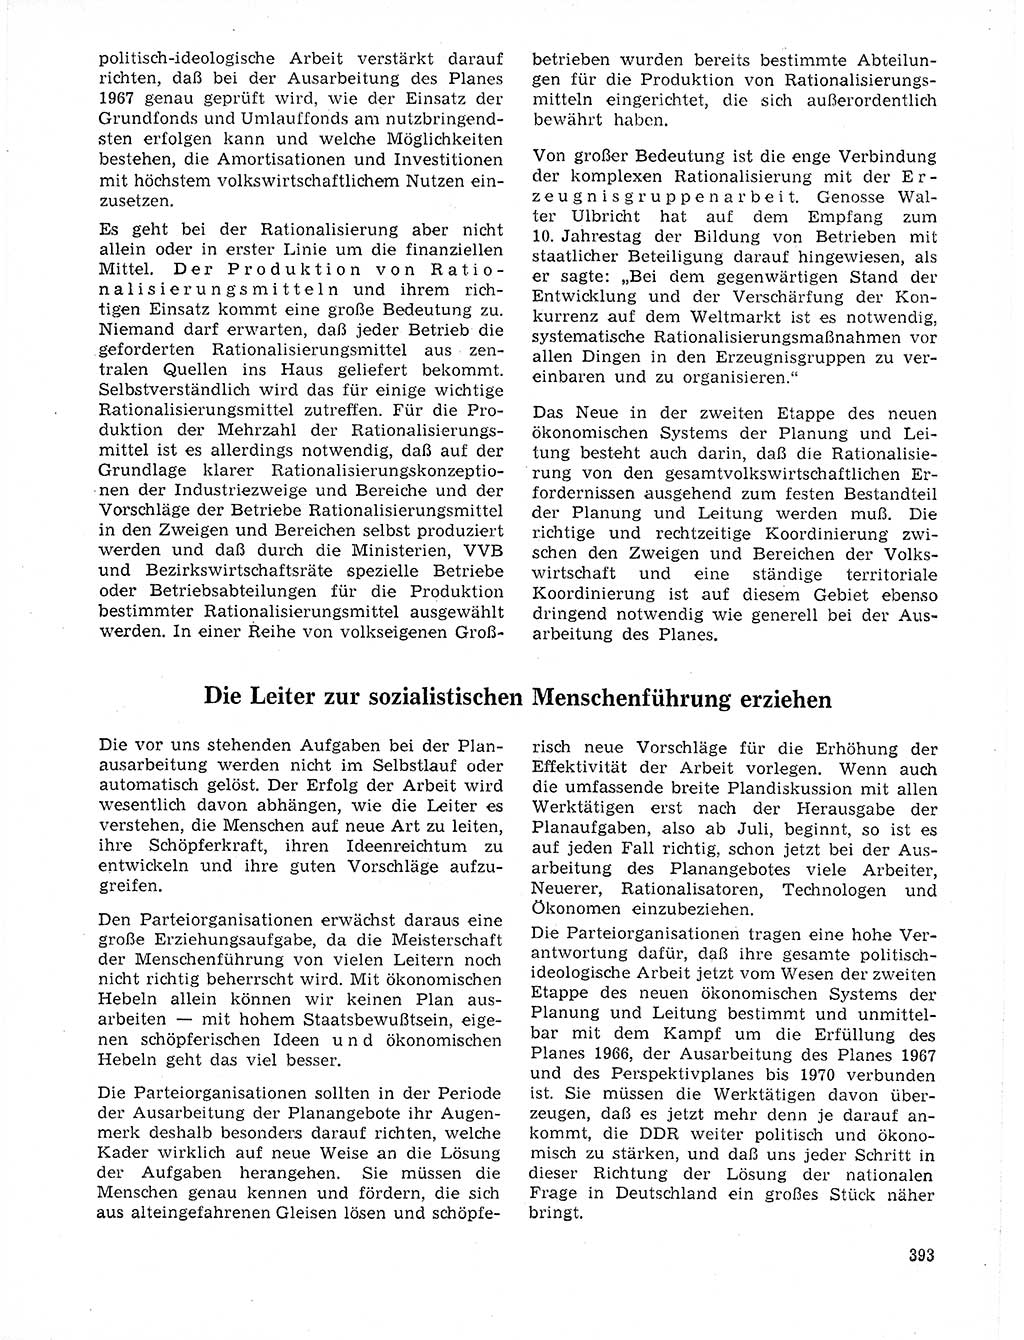 Neuer Weg (NW), Organ des Zentralkomitees (ZK) der SED (Sozialistische Einheitspartei Deutschlands) für Fragen des Parteilebens, 21. Jahrgang [Deutsche Demokratische Republik (DDR)] 1966, Seite 393 (NW ZK SED DDR 1966, S. 393)